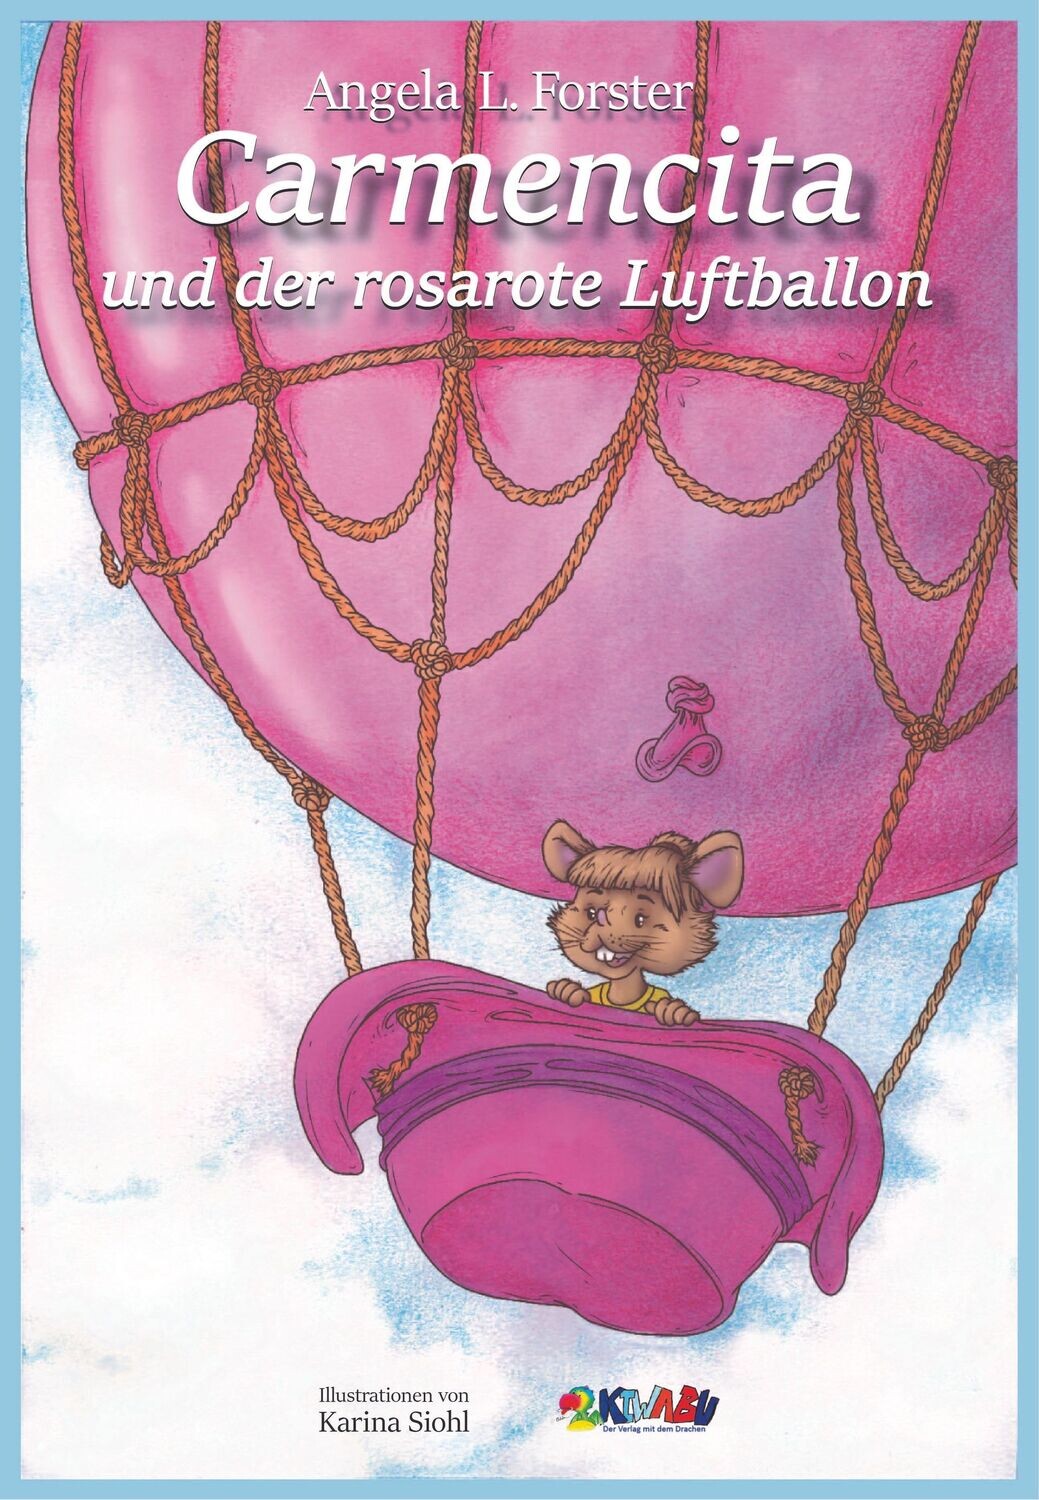 Carmencita und der rosarote Luftballon von Angela L. Forster